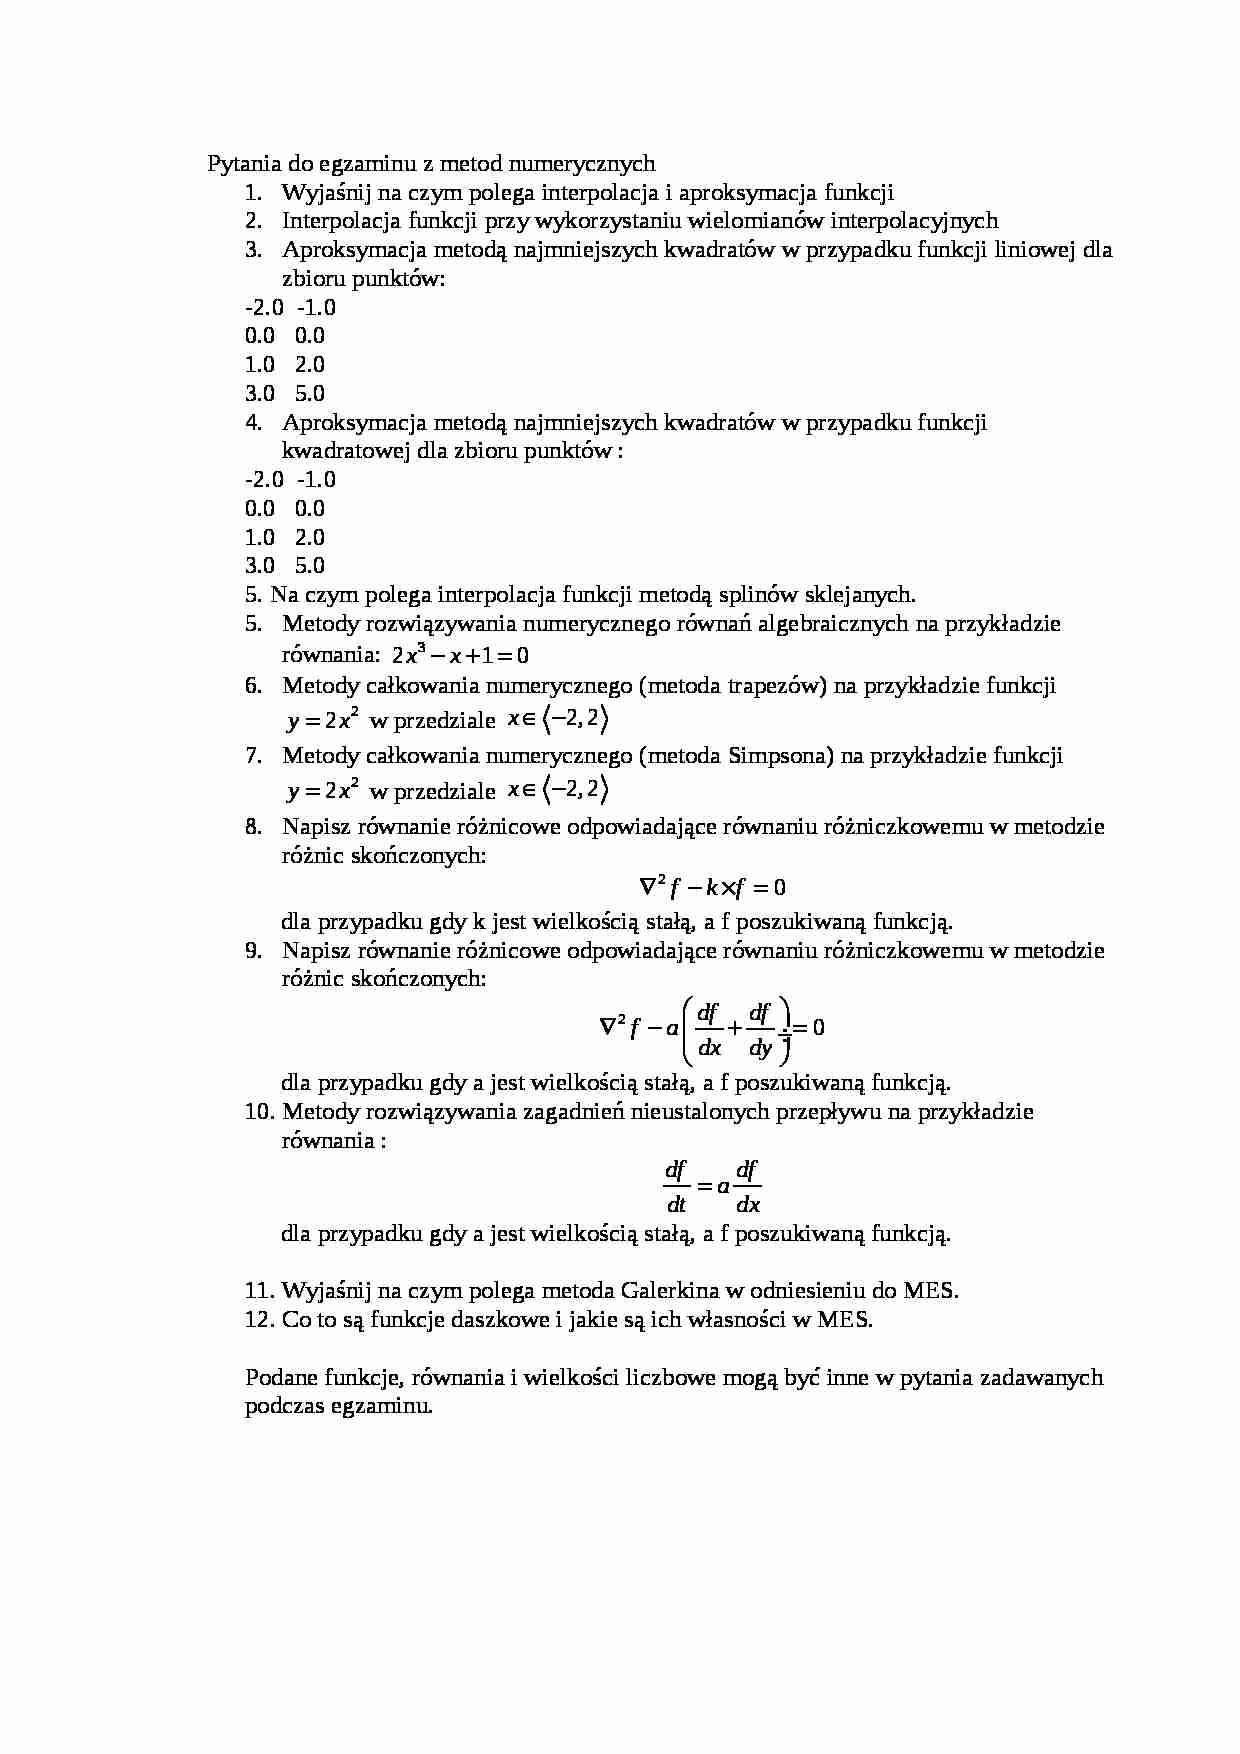 Pytania egzamin - Metoda numeryczna - strona 1